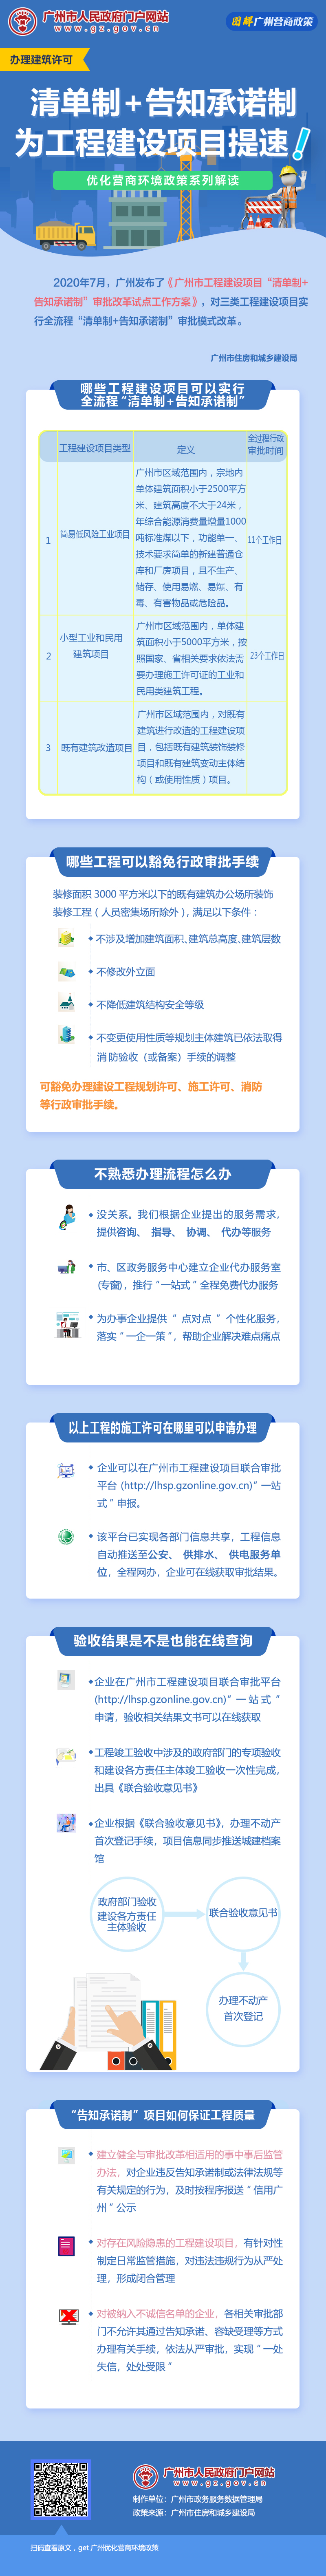 9广州市工程建设项目“清单制+告知承诺制”审批改革试点工作方案.jpg